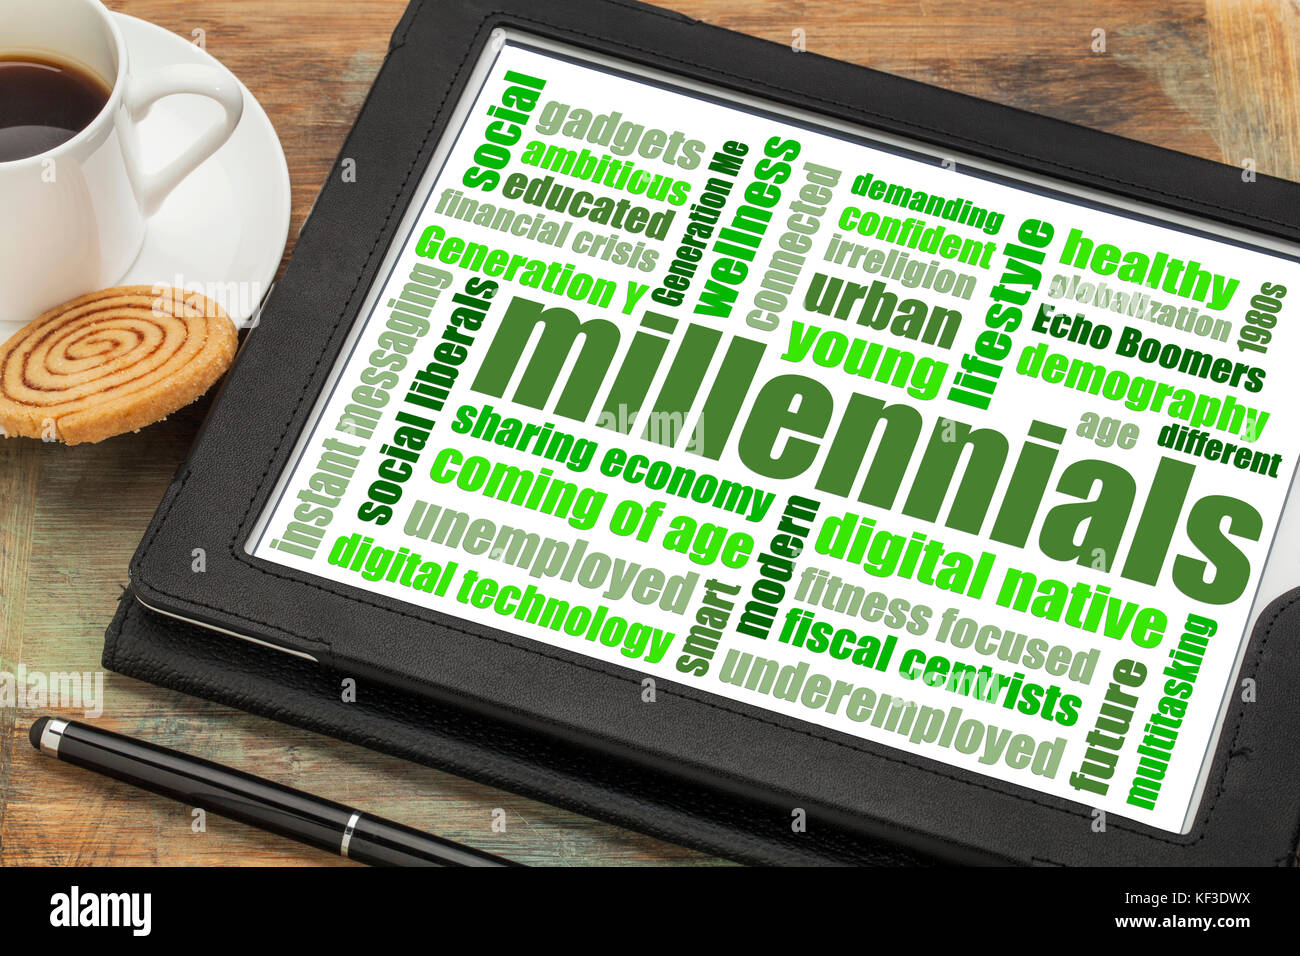 Millennials generation Wort Wolke auf einer digitalen Tablette mit einer Tasse Kaffee - Demografie Konzept Stockfoto